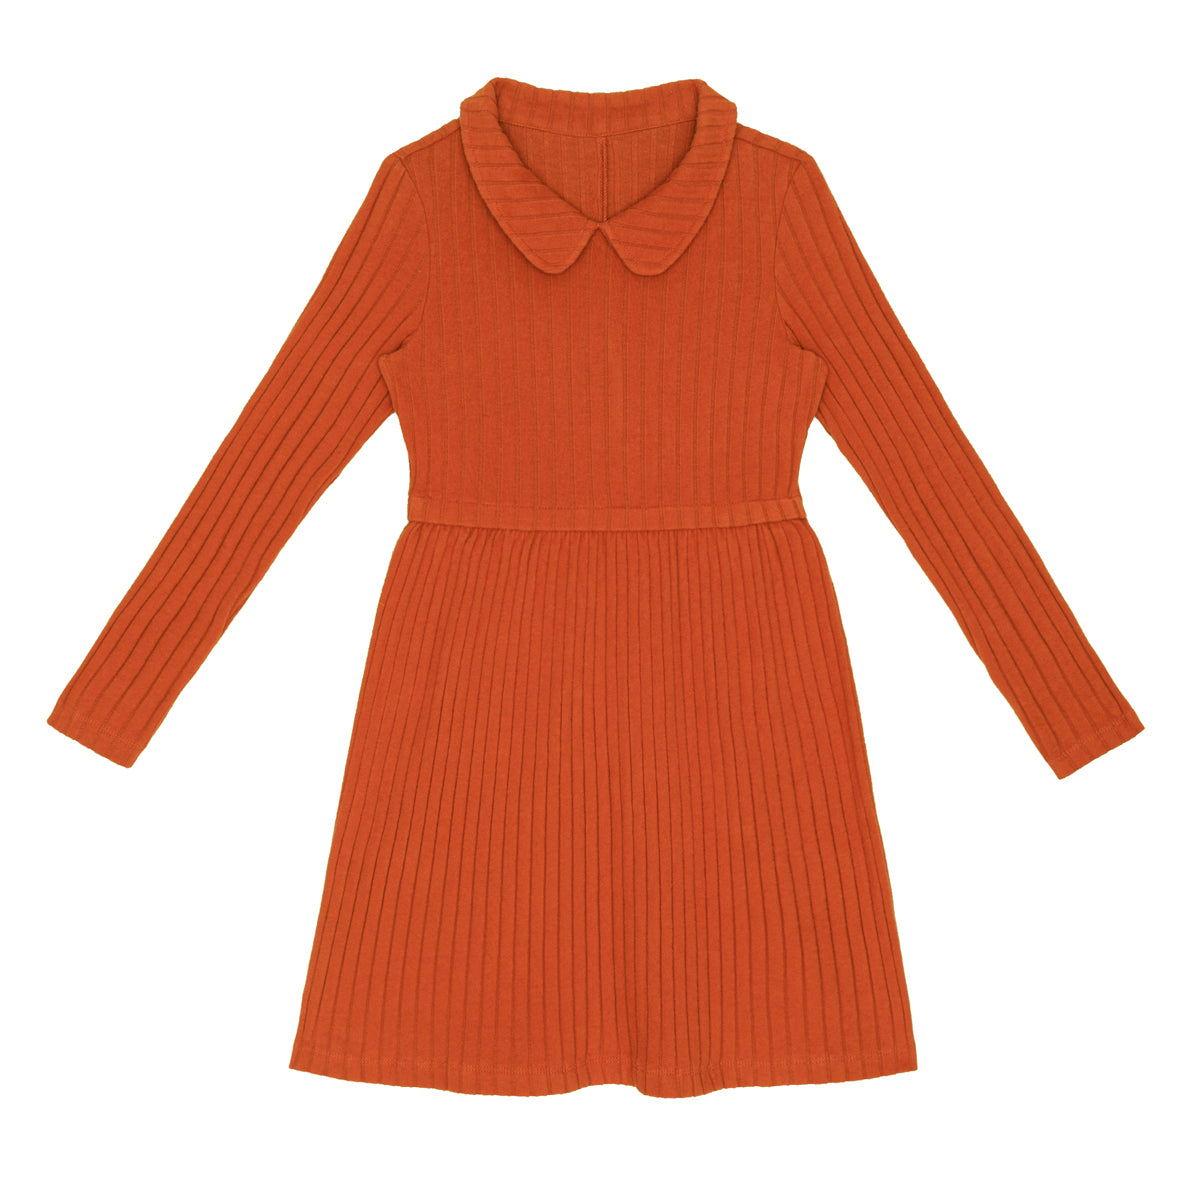 LITTLE HEDONIST -  Robe à manches longues orange neuve - 2 ans